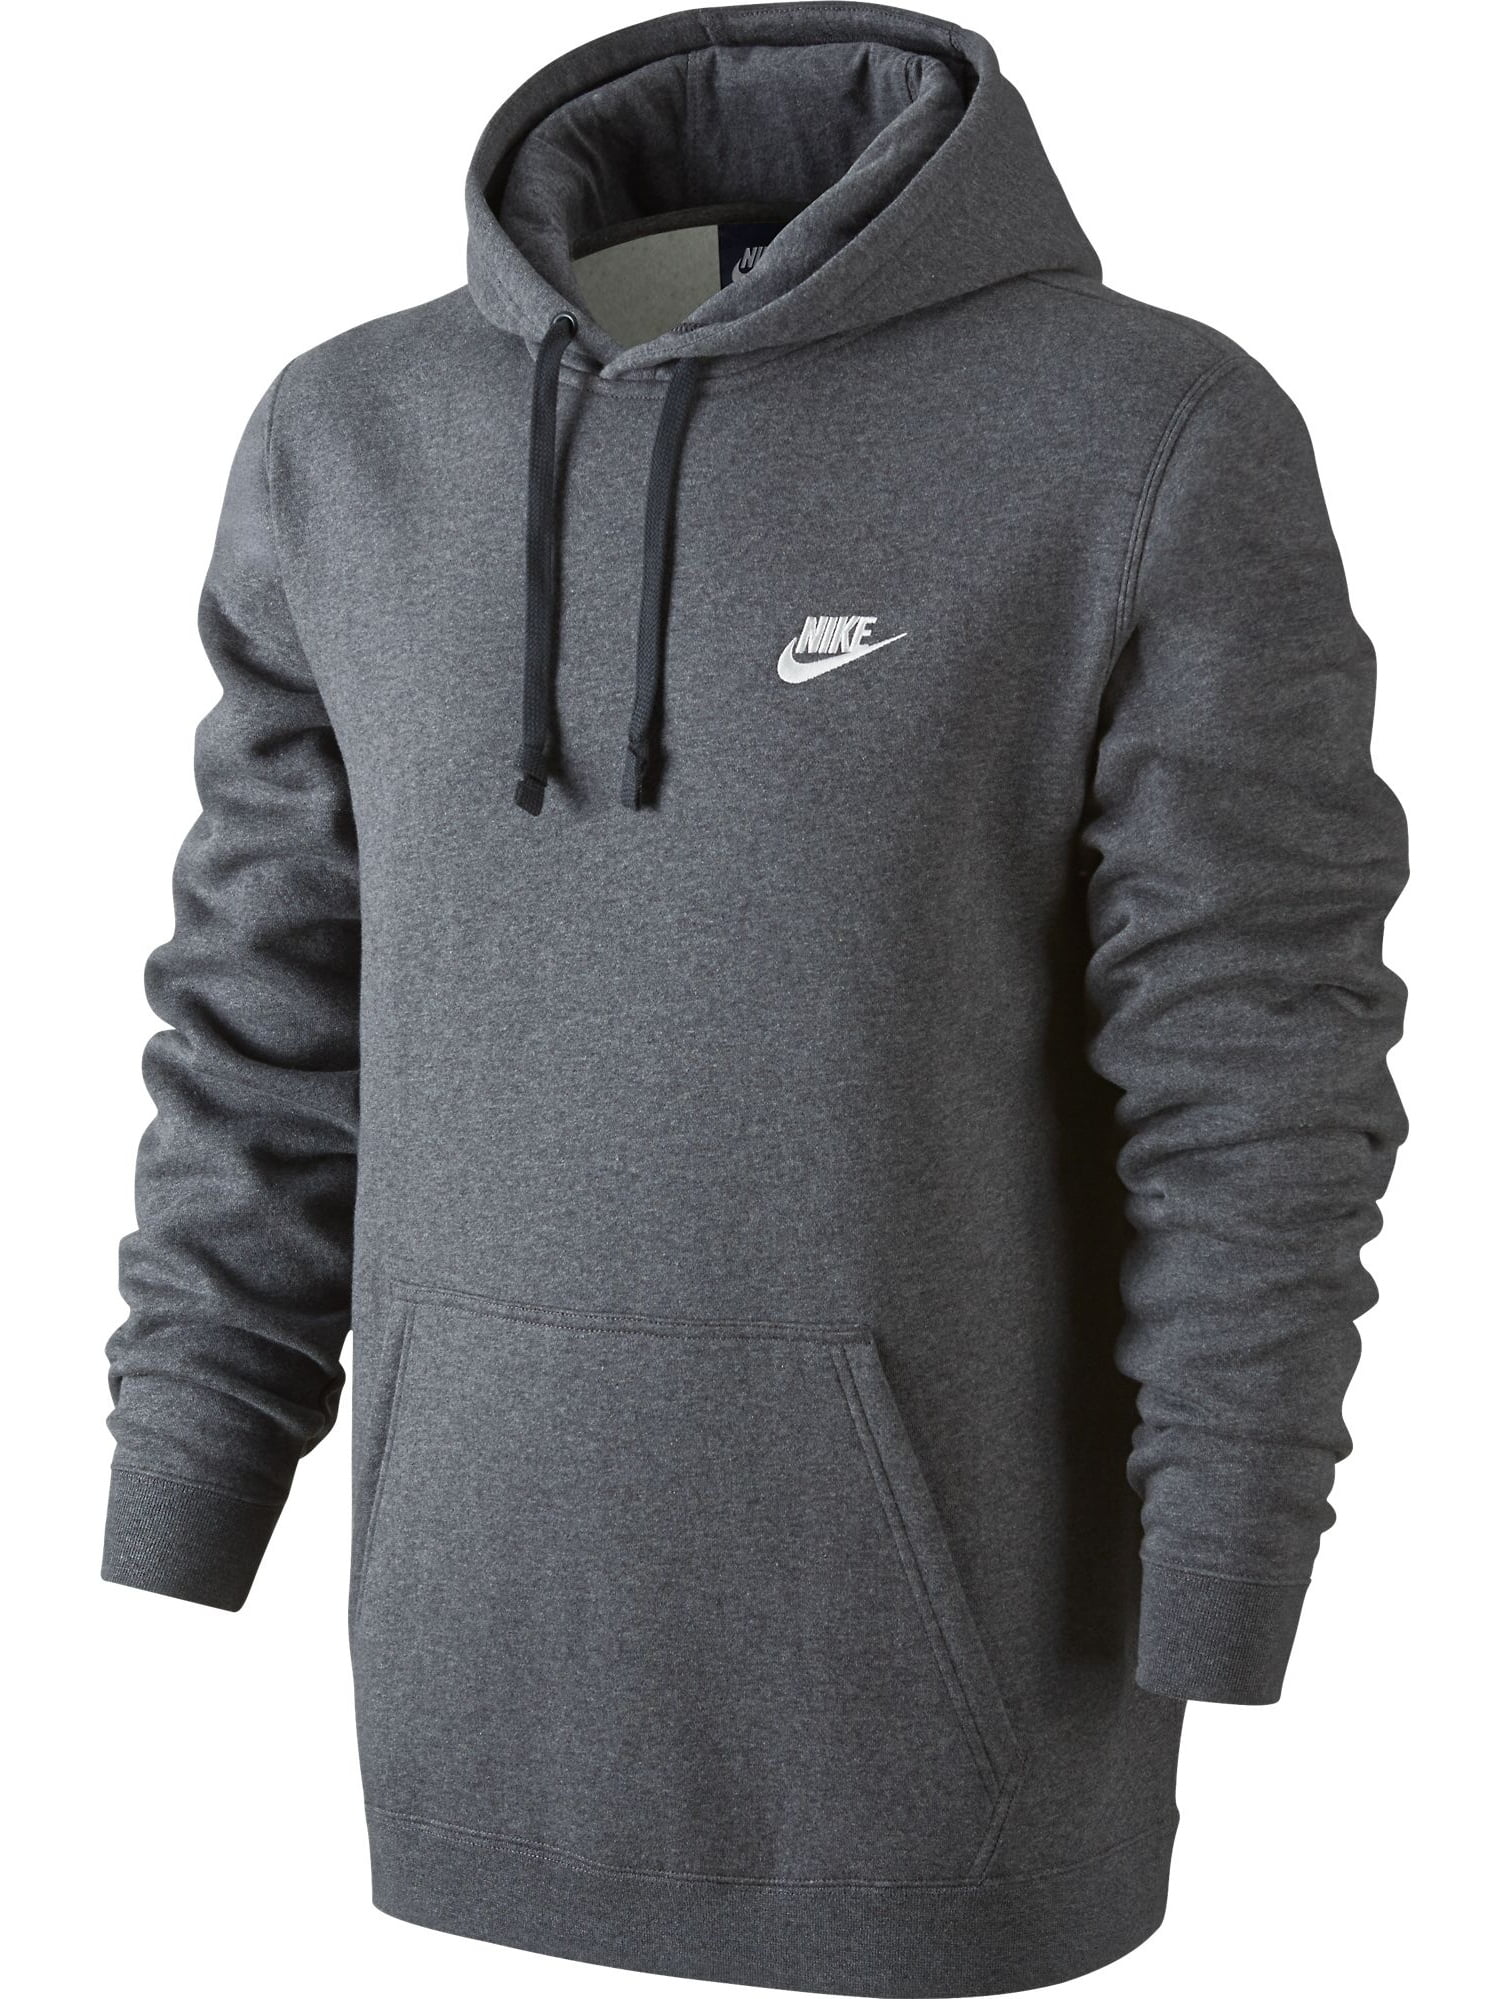 Nike NSW Club Fleece Pullover Men's Hoodie Grey 804346-071 - Walmart.com